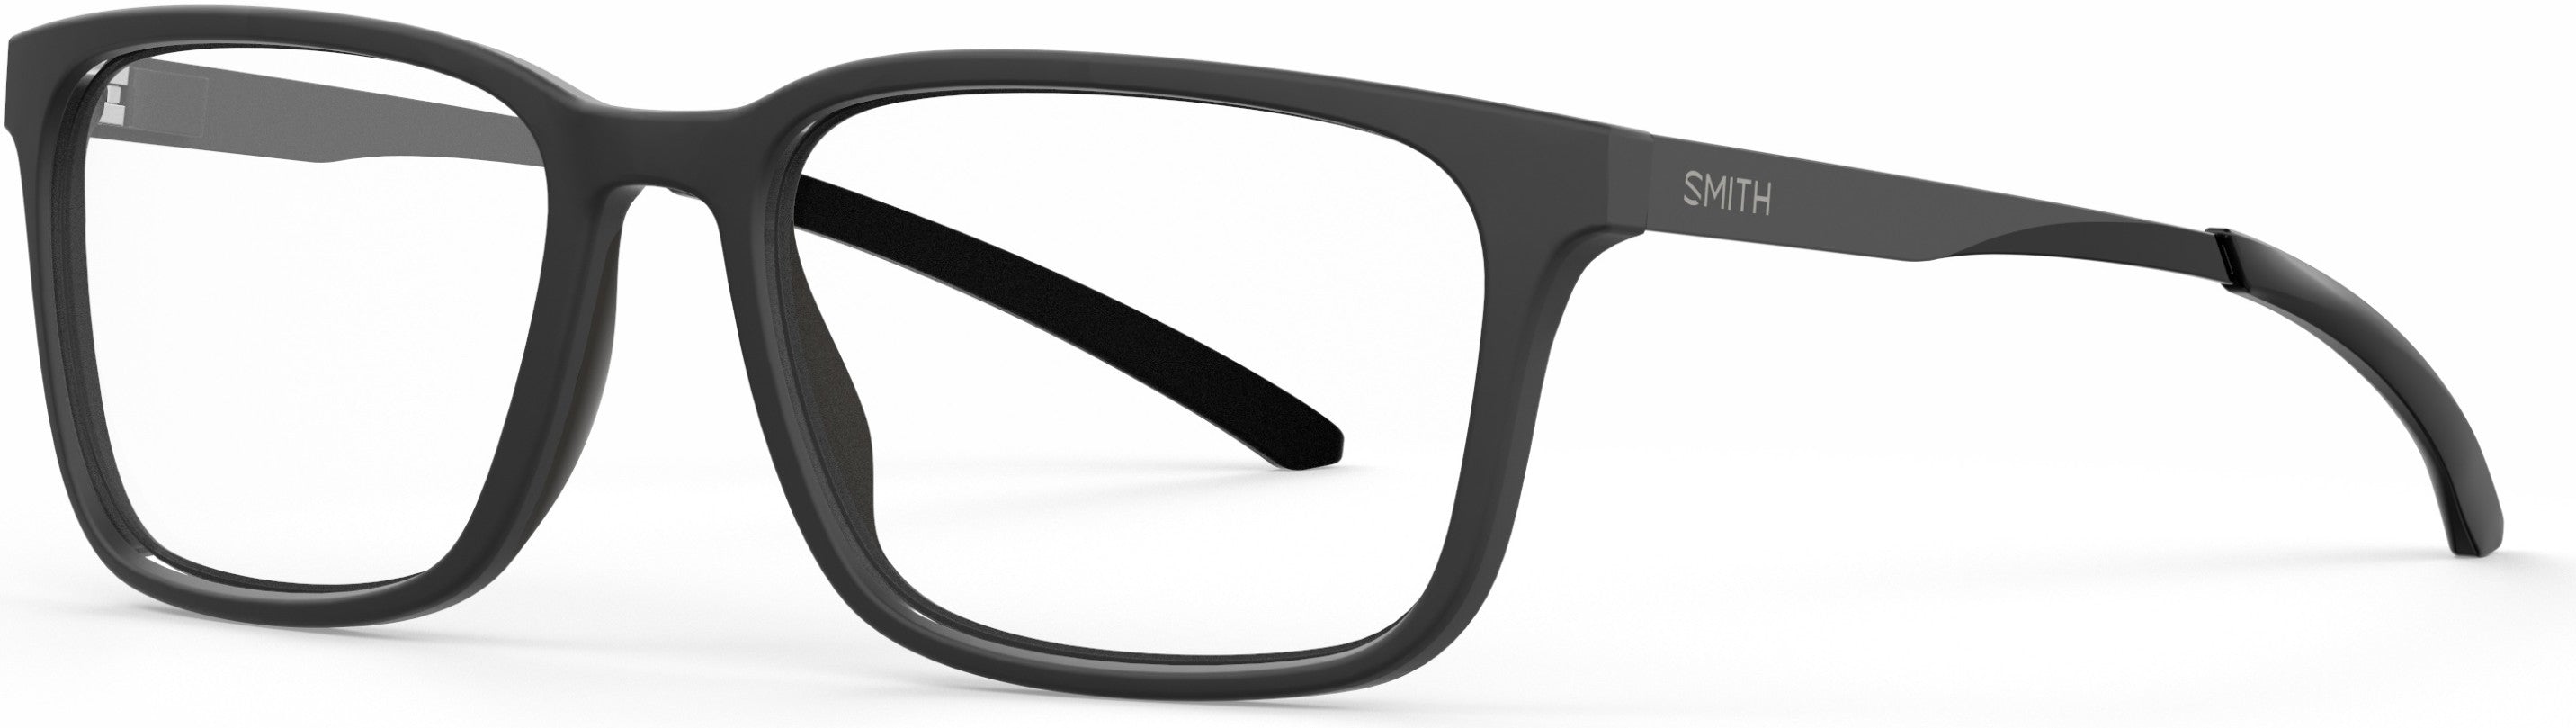 Smith Outsider Mix Rectangular Eyeglasses 0003-0003  Matte Black (00 Demo Lens)